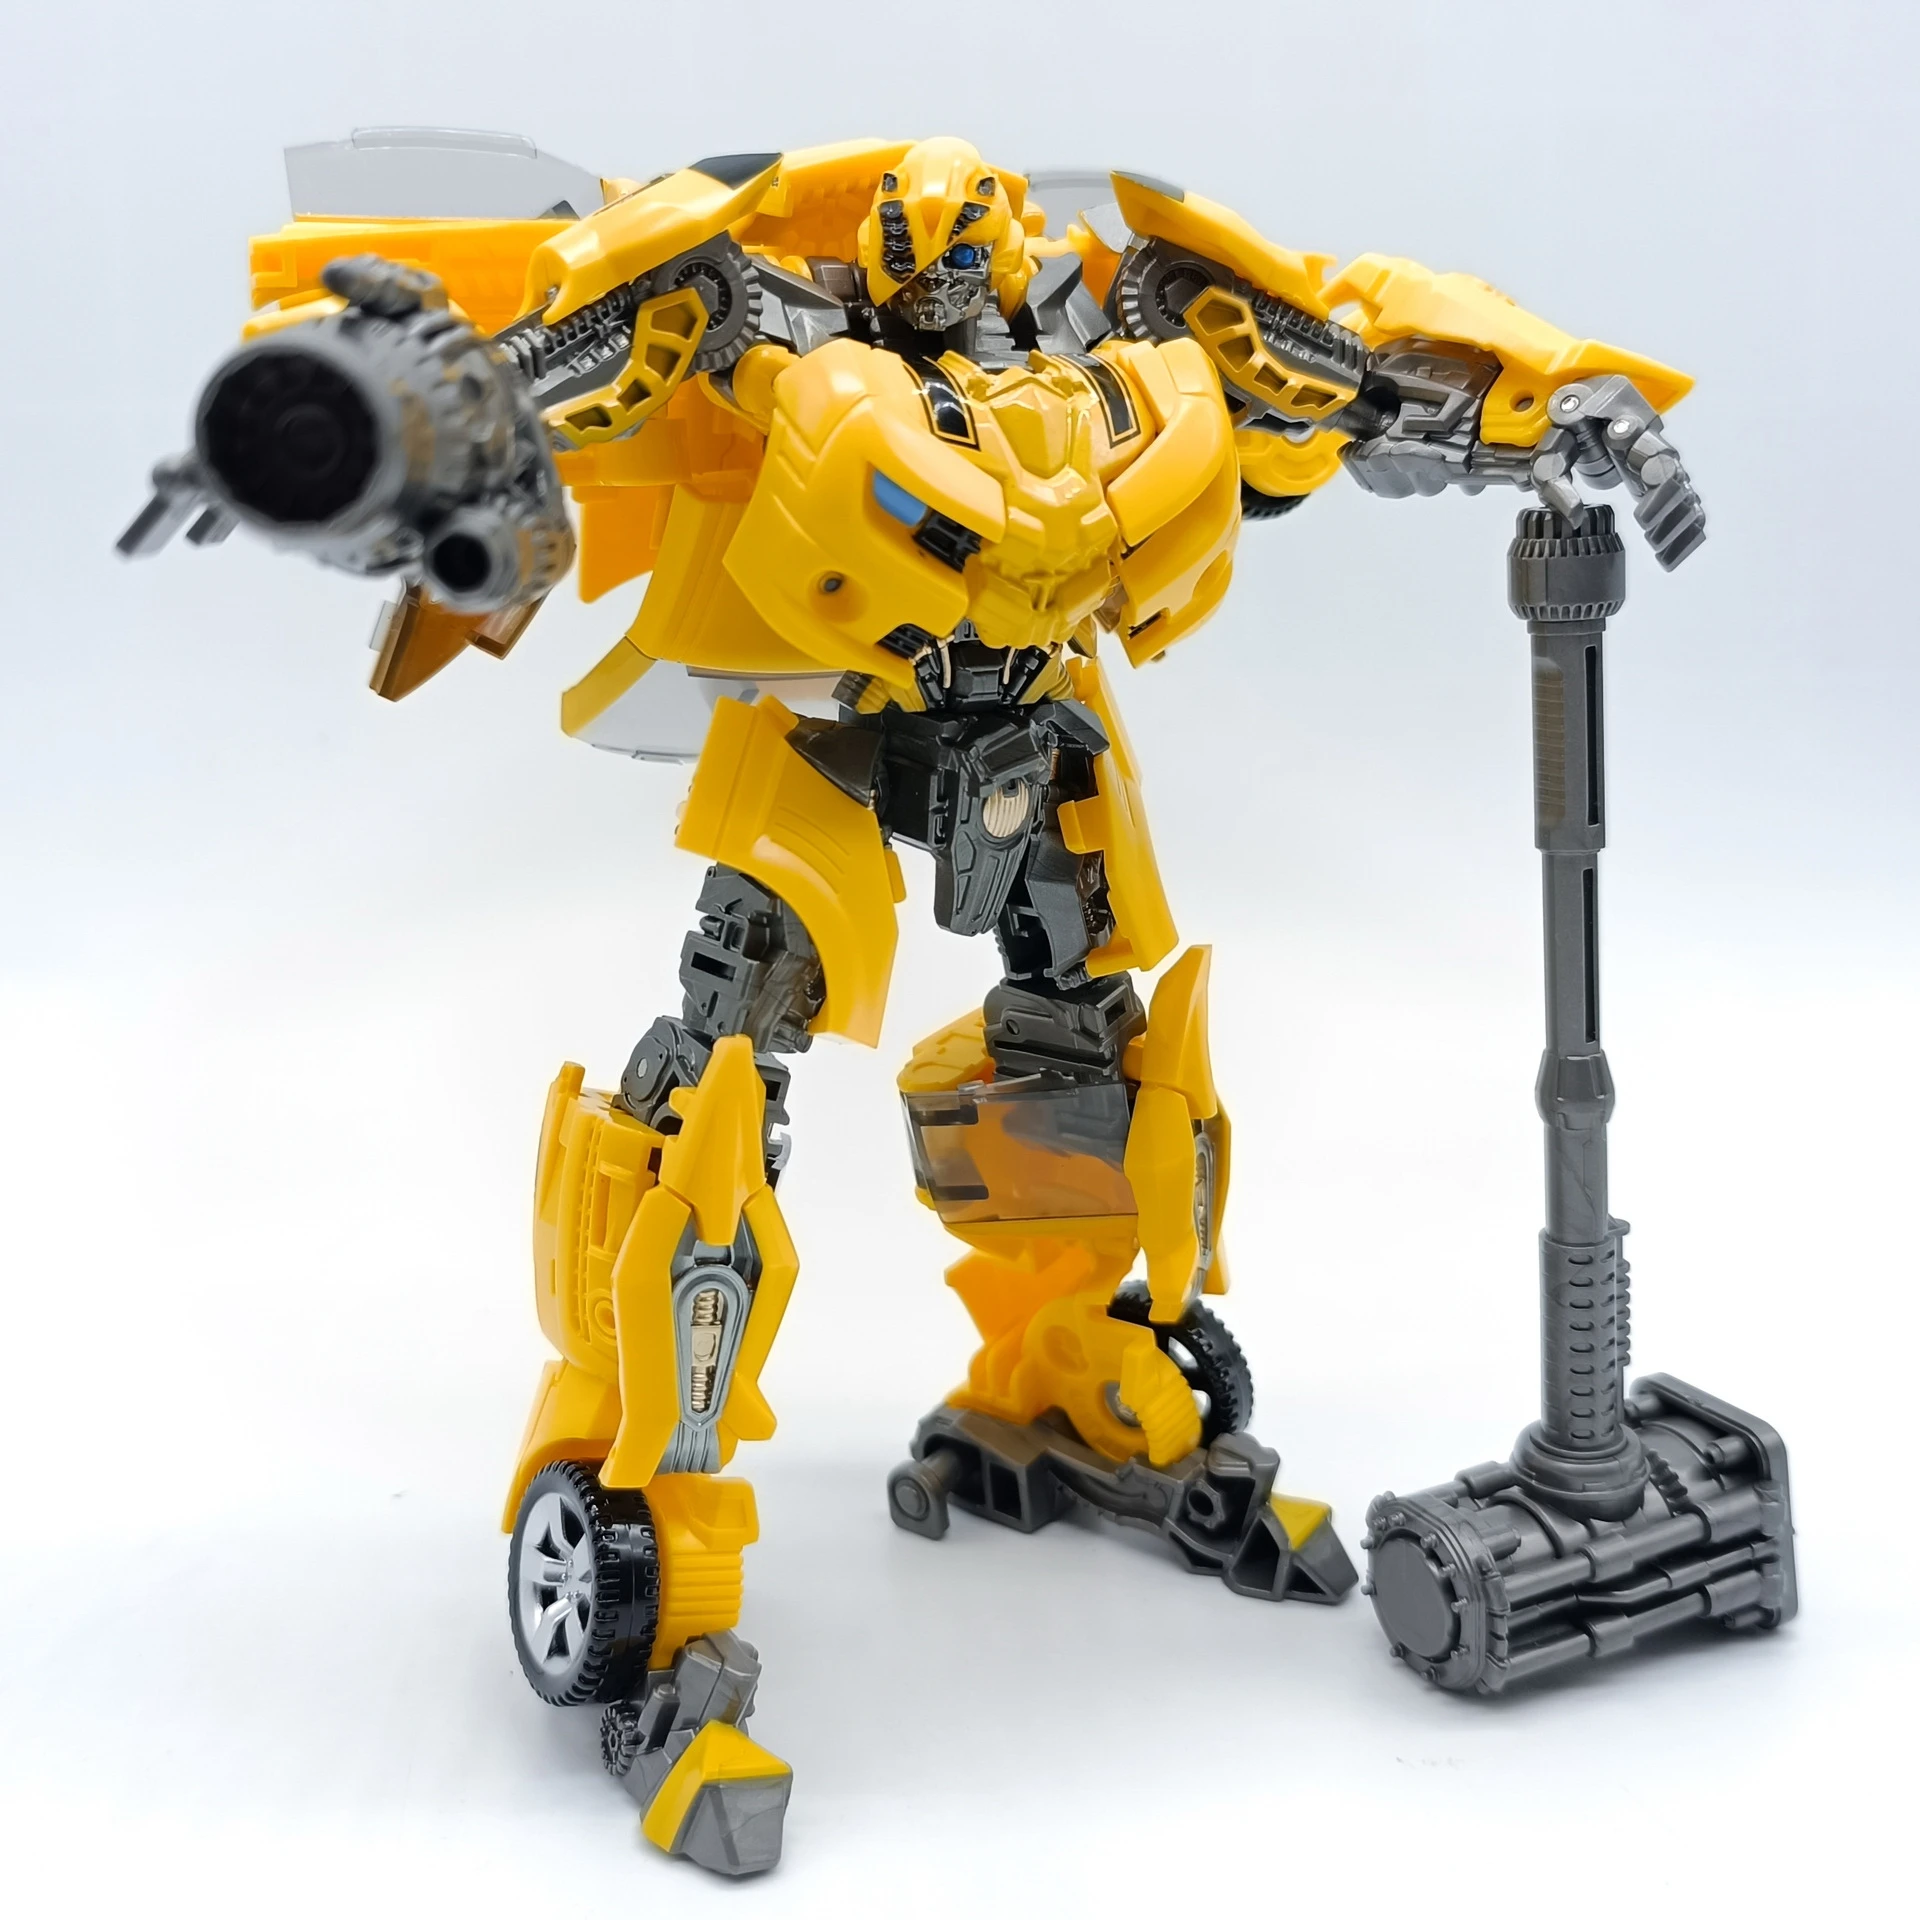 

Игрушки-трансформеры BAIWEI TW1025 SS49, желтый пчелиный Hornet, воин, экшн-экшн, фоторобот, жук, деформирующая модель, подарки